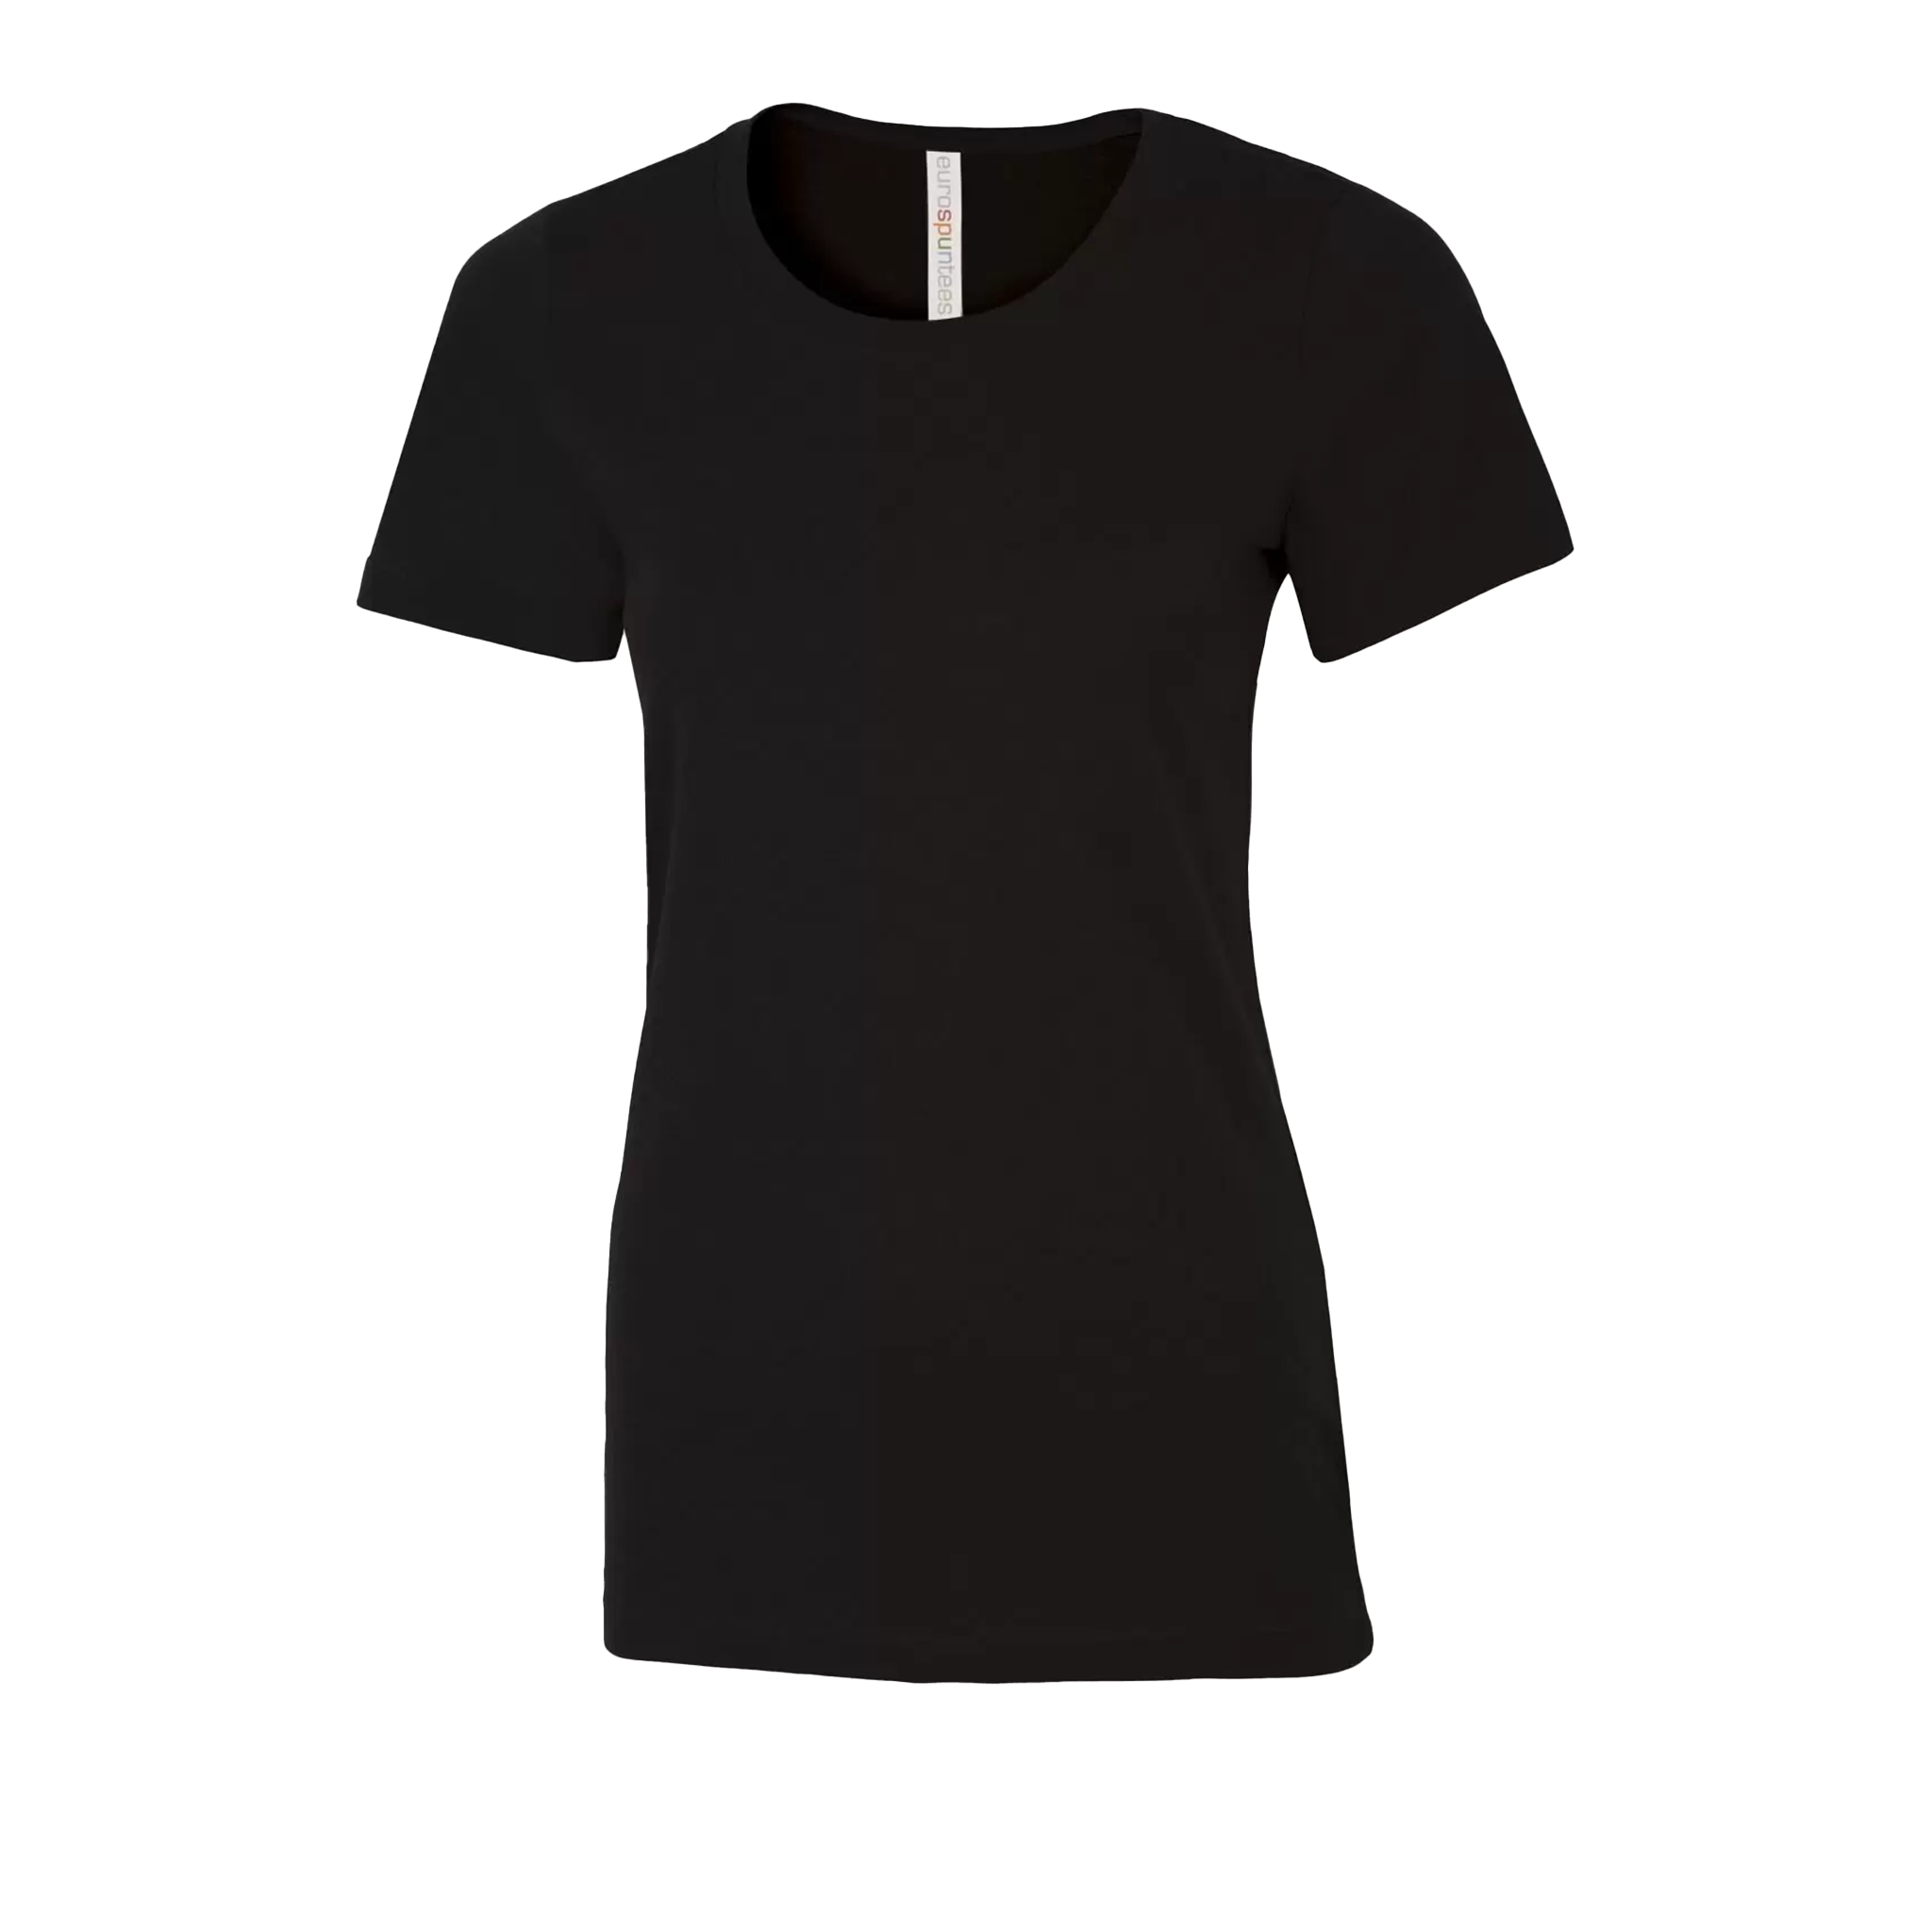 ATC Eurospun Ring Spun T-Shirt - Women's Sizing XS-4XL - Black